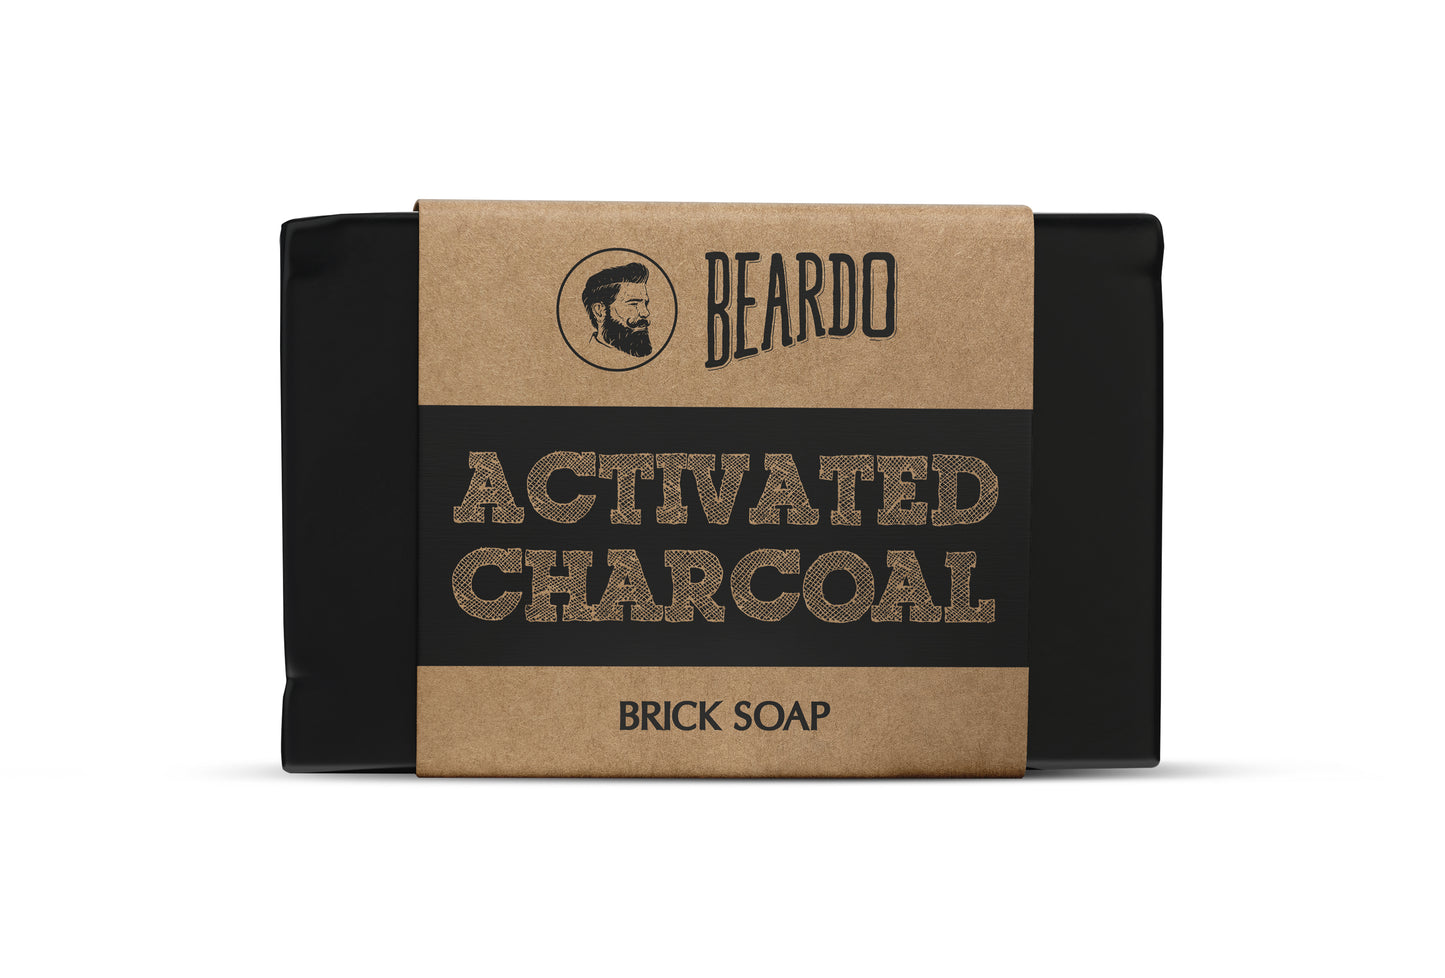 Soaps for men, beardo charcoal soap, Charcoal soap, activated charcoal soap, best soaps for men